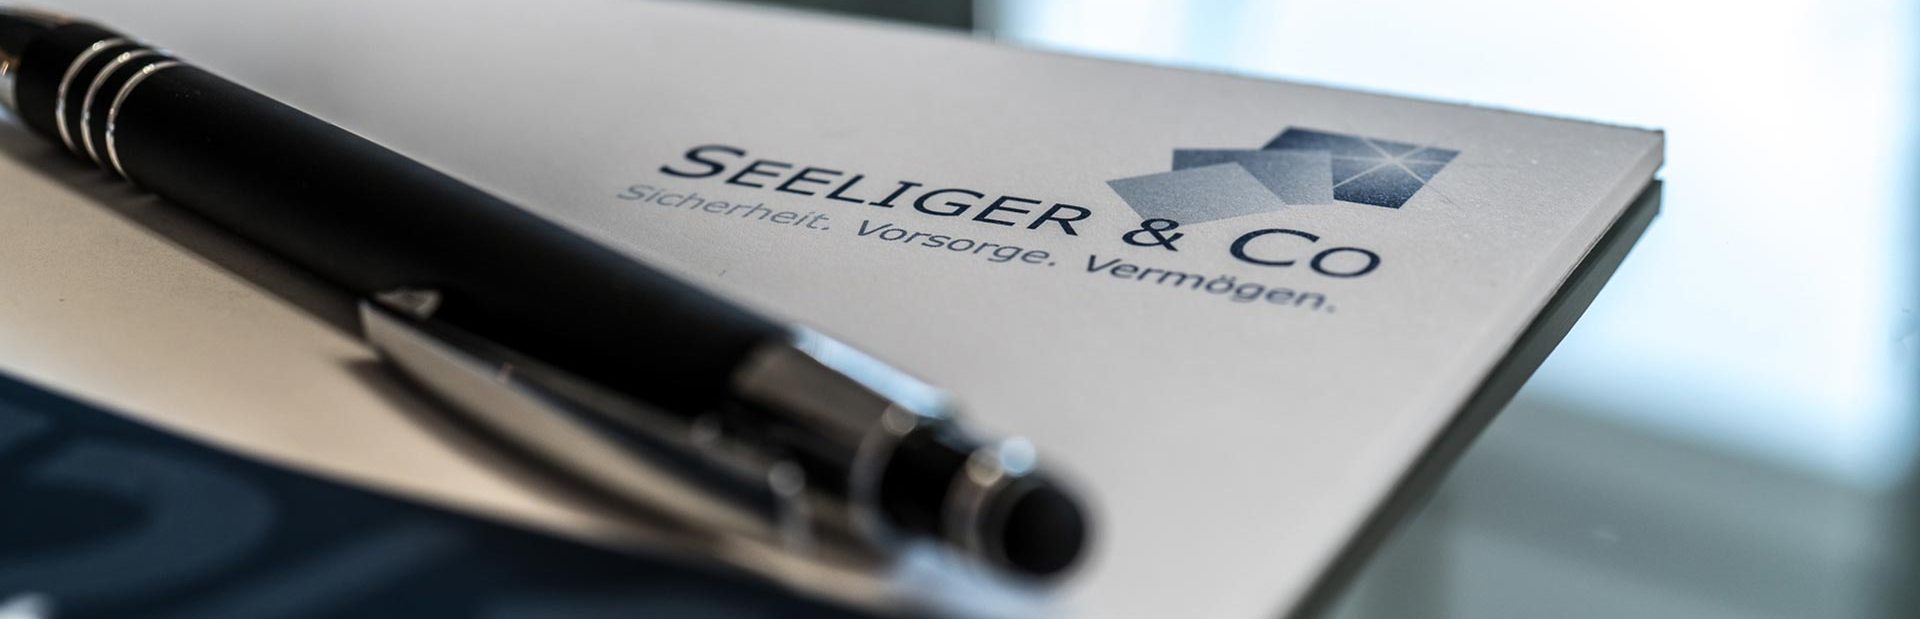 Seeliger & Co. GmbH - Mitgliedschaften